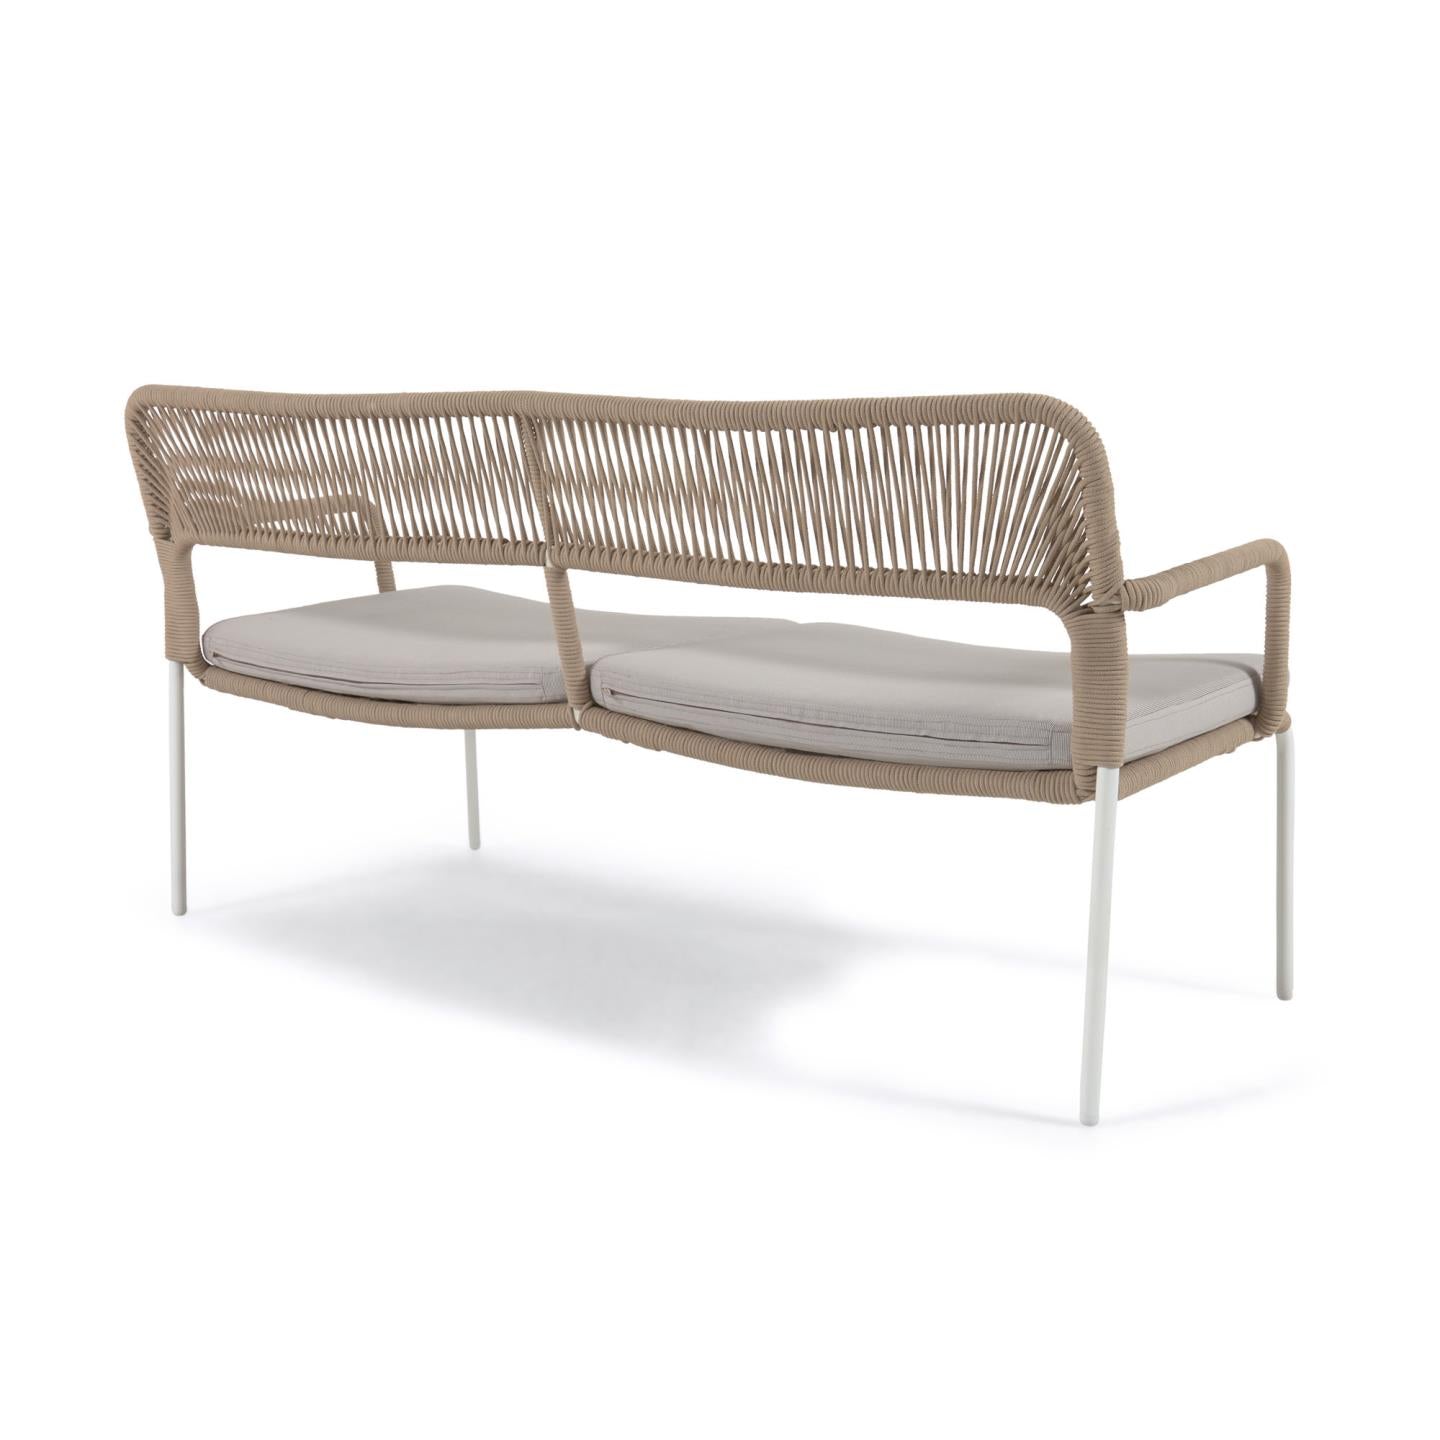 Cailin kétszemélyes kanapé bézs színű zsinórból, horganyzott acél lábakkal, fehér színben, 150 cm